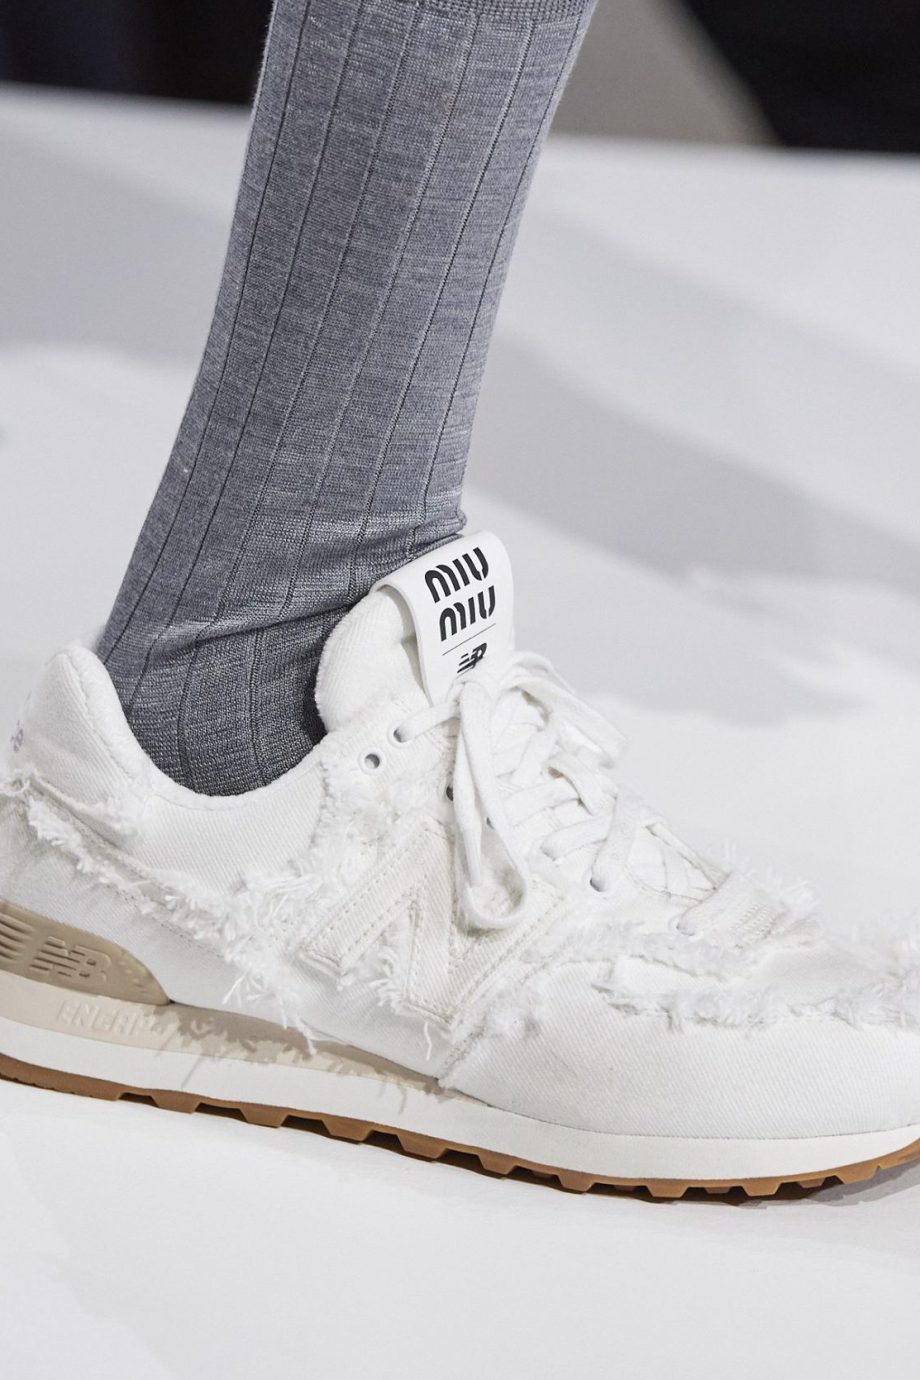 B.C. Penelope stel je voor De Miu Miu x New Balance sneakers zijn terug - Vogue NL